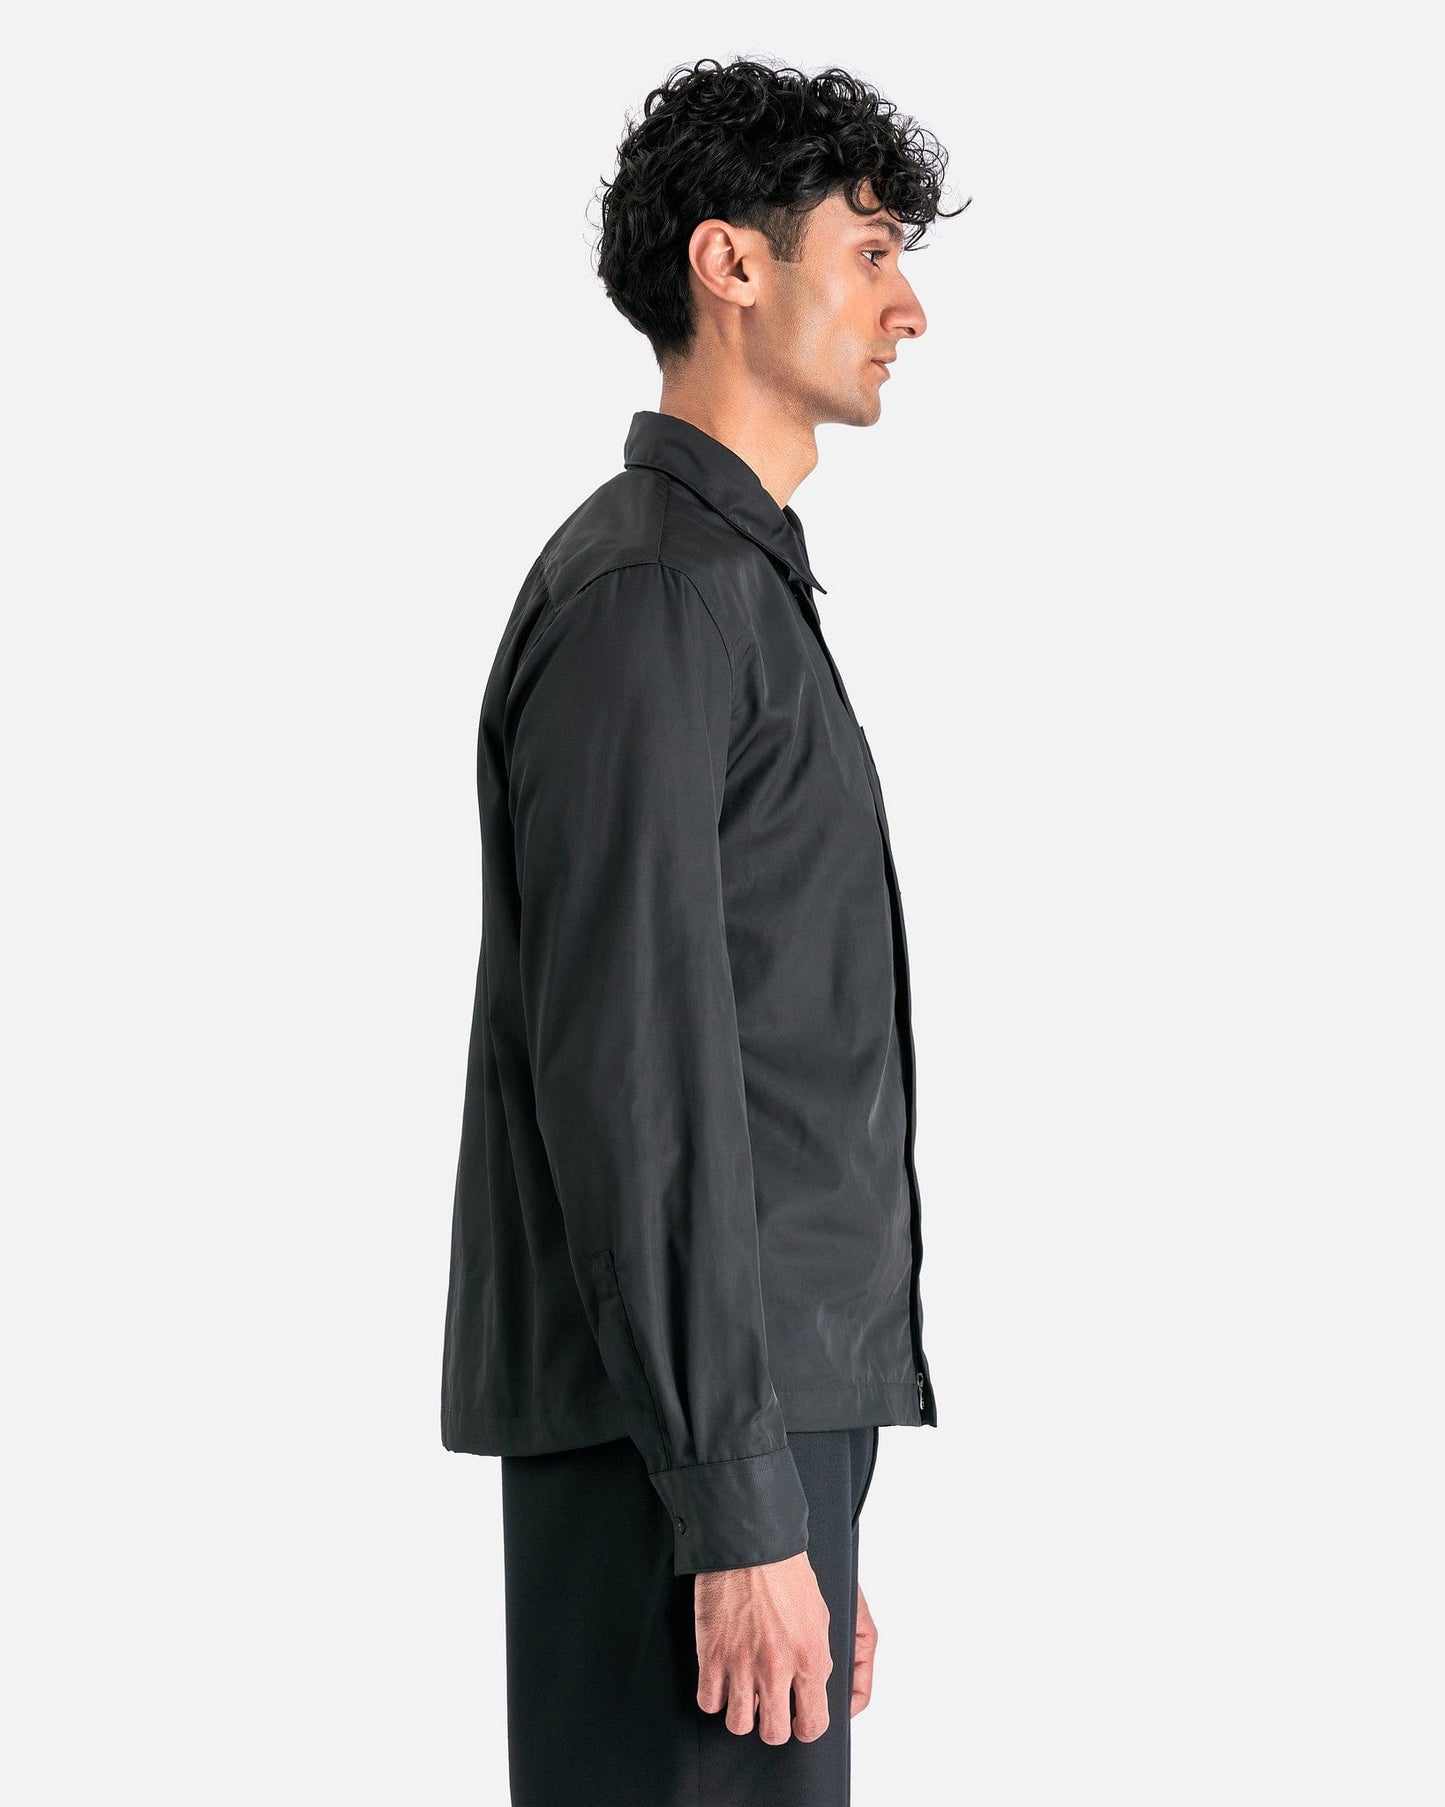 Dries Van Noten Men's Shirts Corran Shirt in Black